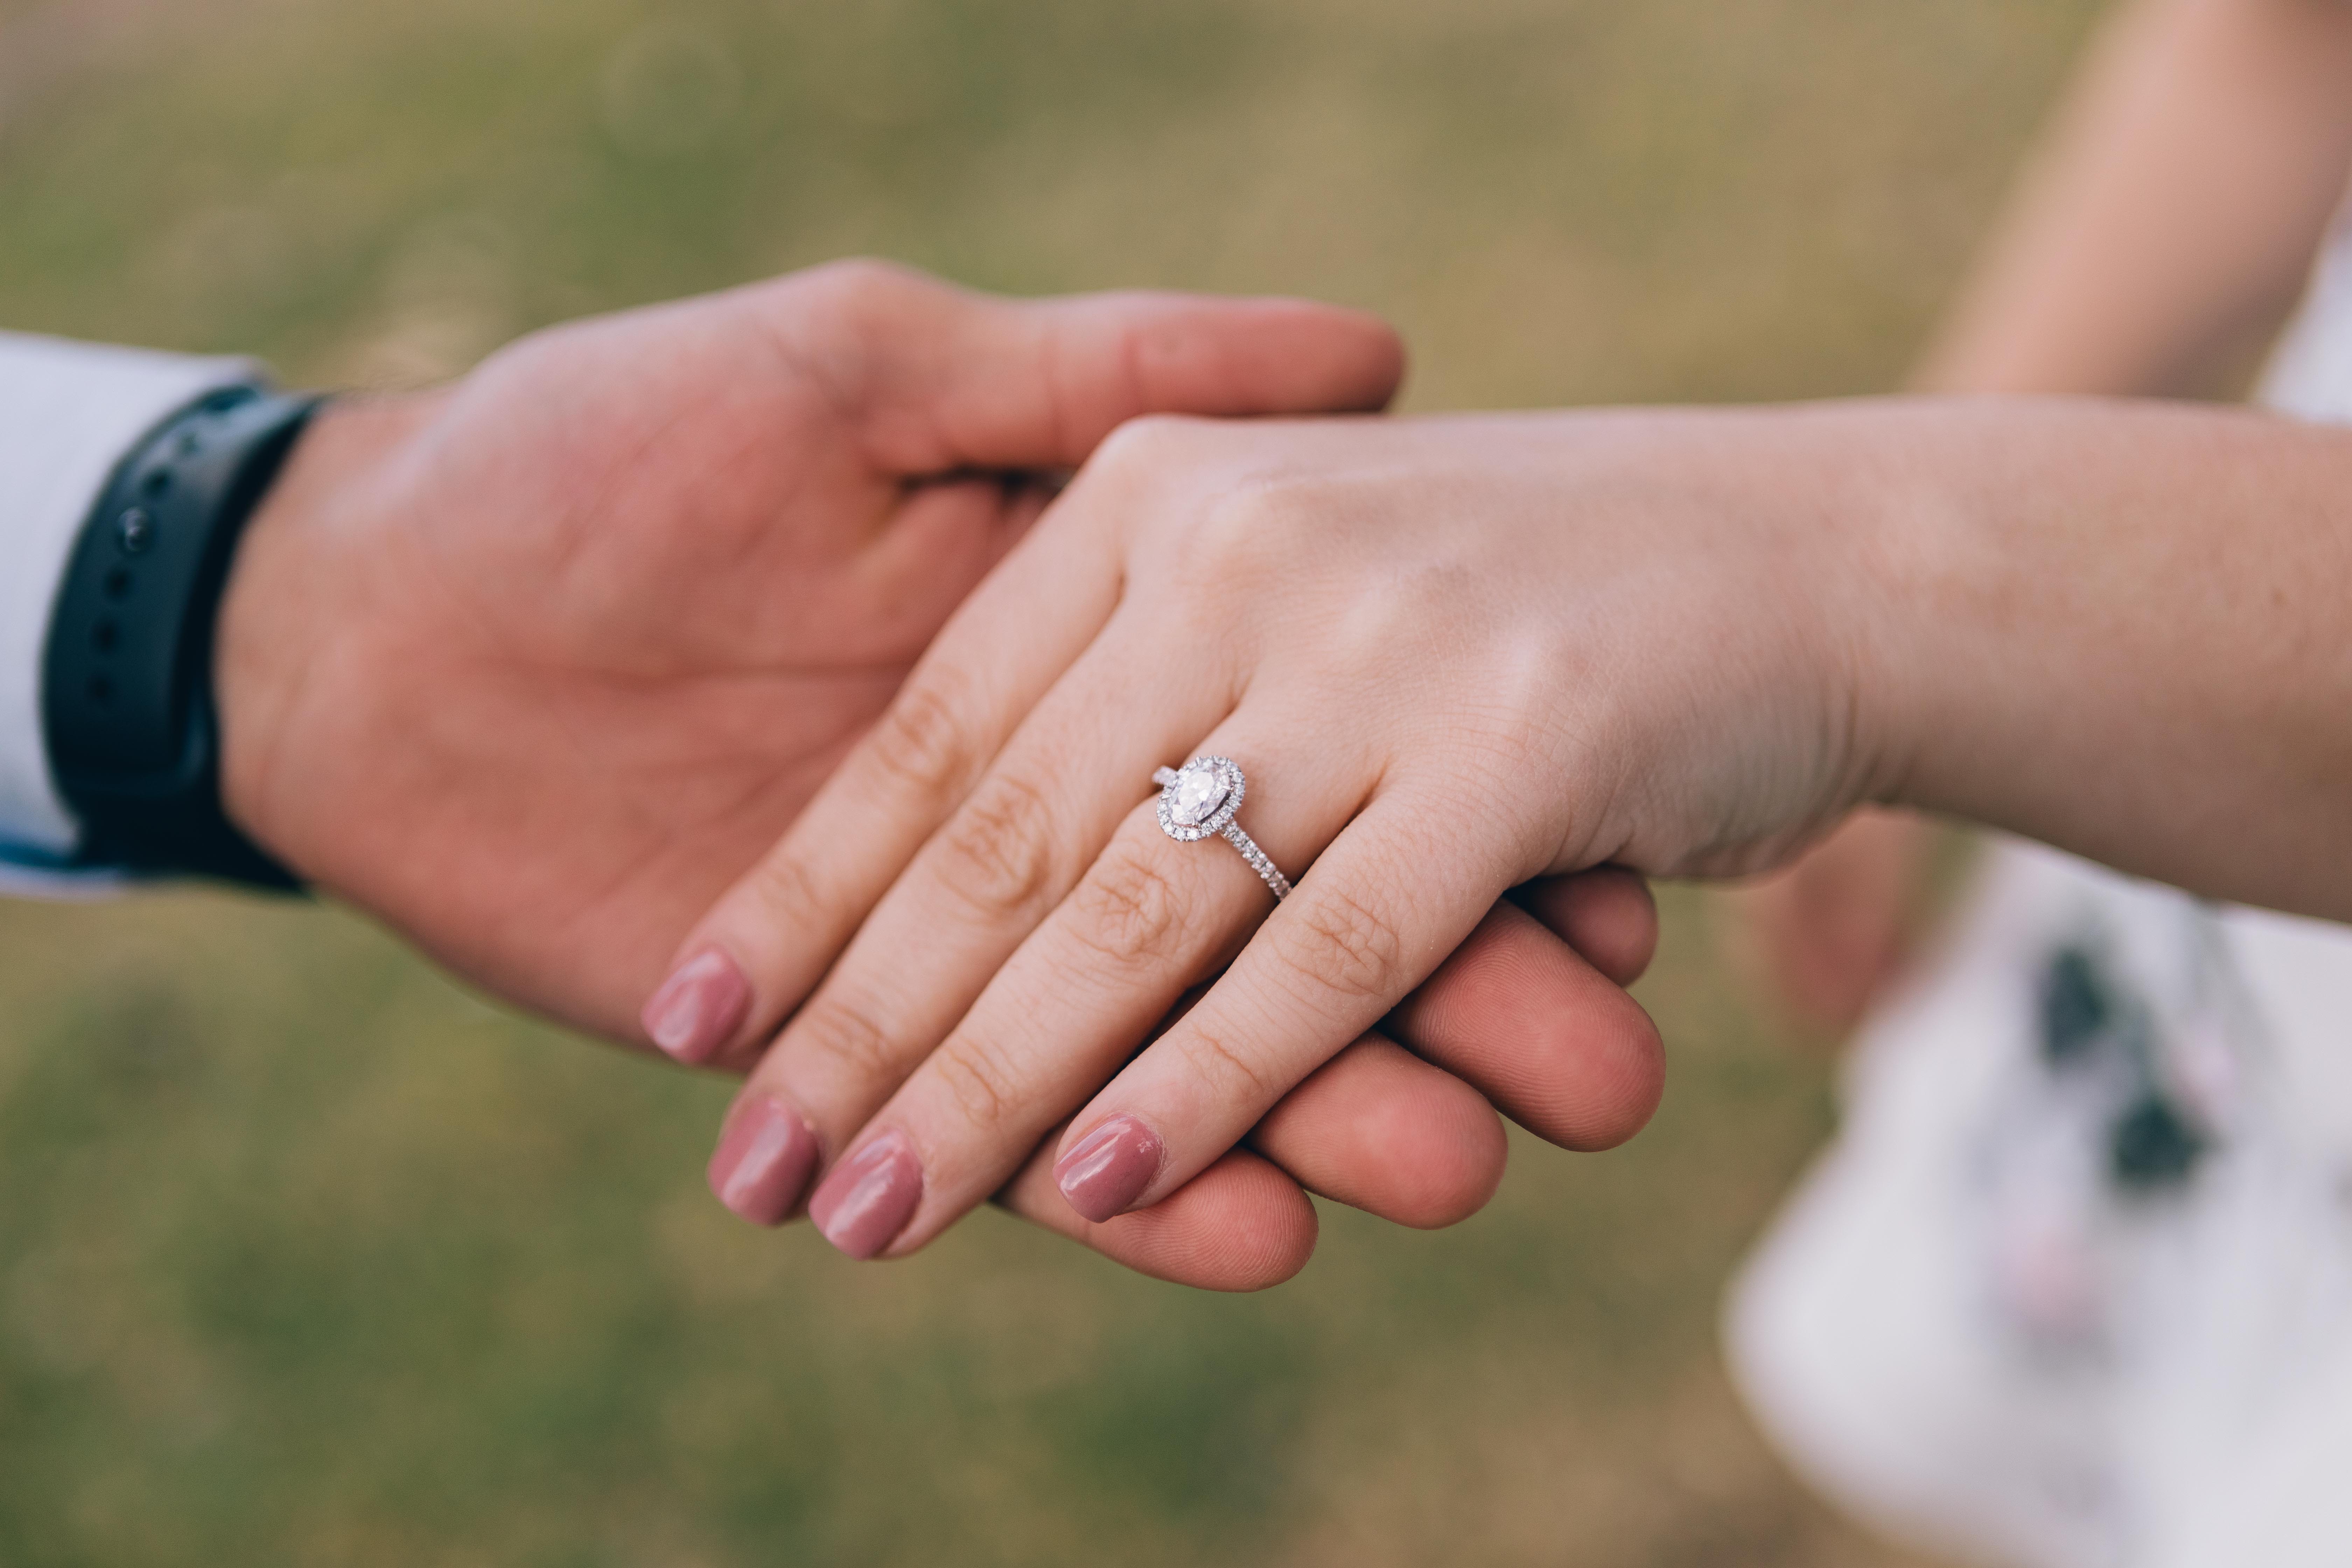 A wedding ring. | Source: Pexels/TranStudios